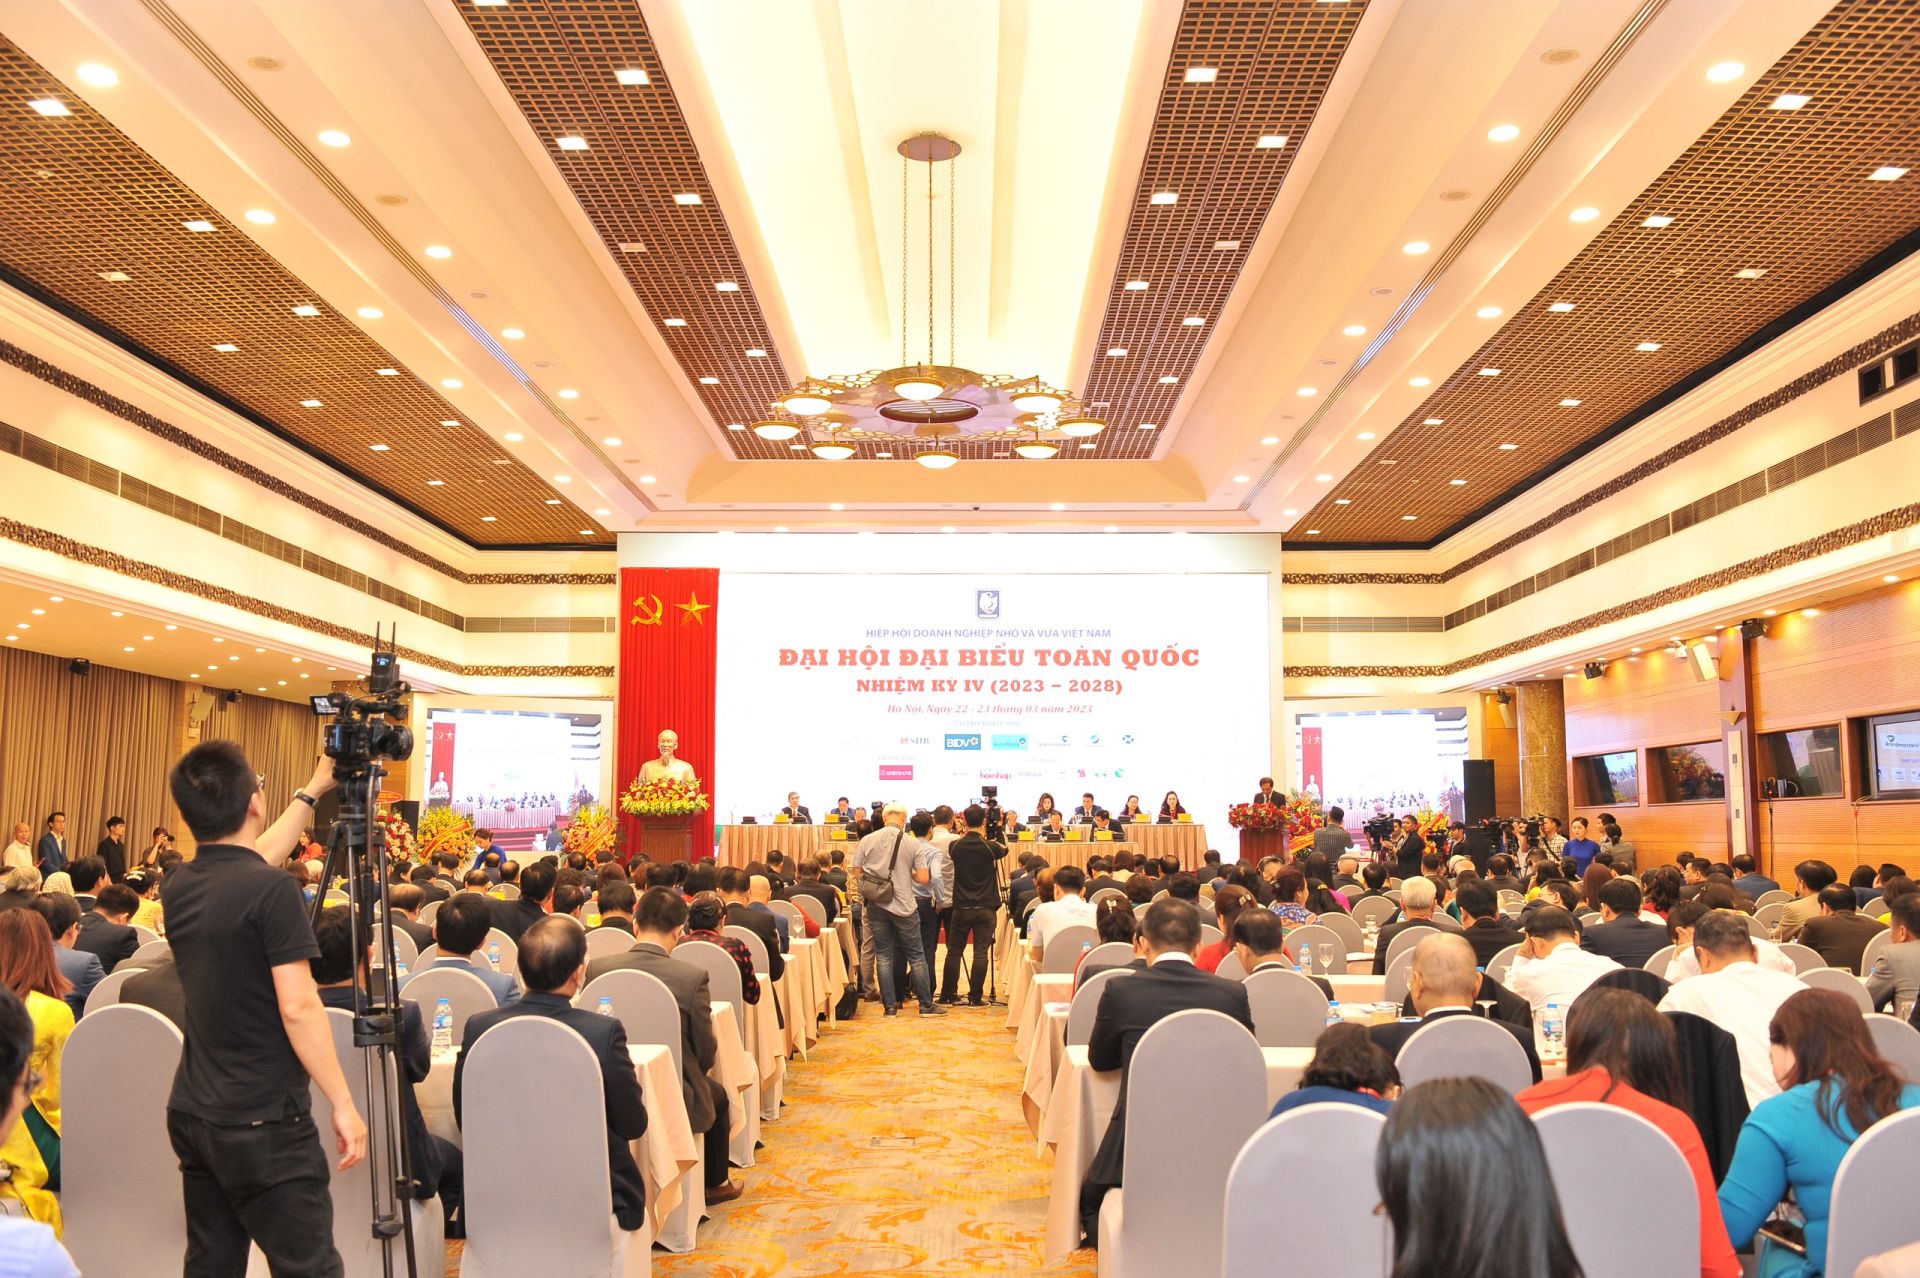 Toàn cảnh Đại hội Đại biểu toàn quốc Hiệp hội Doanh nghiệp nhỏ và vừa Việt Nam khóa IV nhiệm kỳ 2023 - 2028